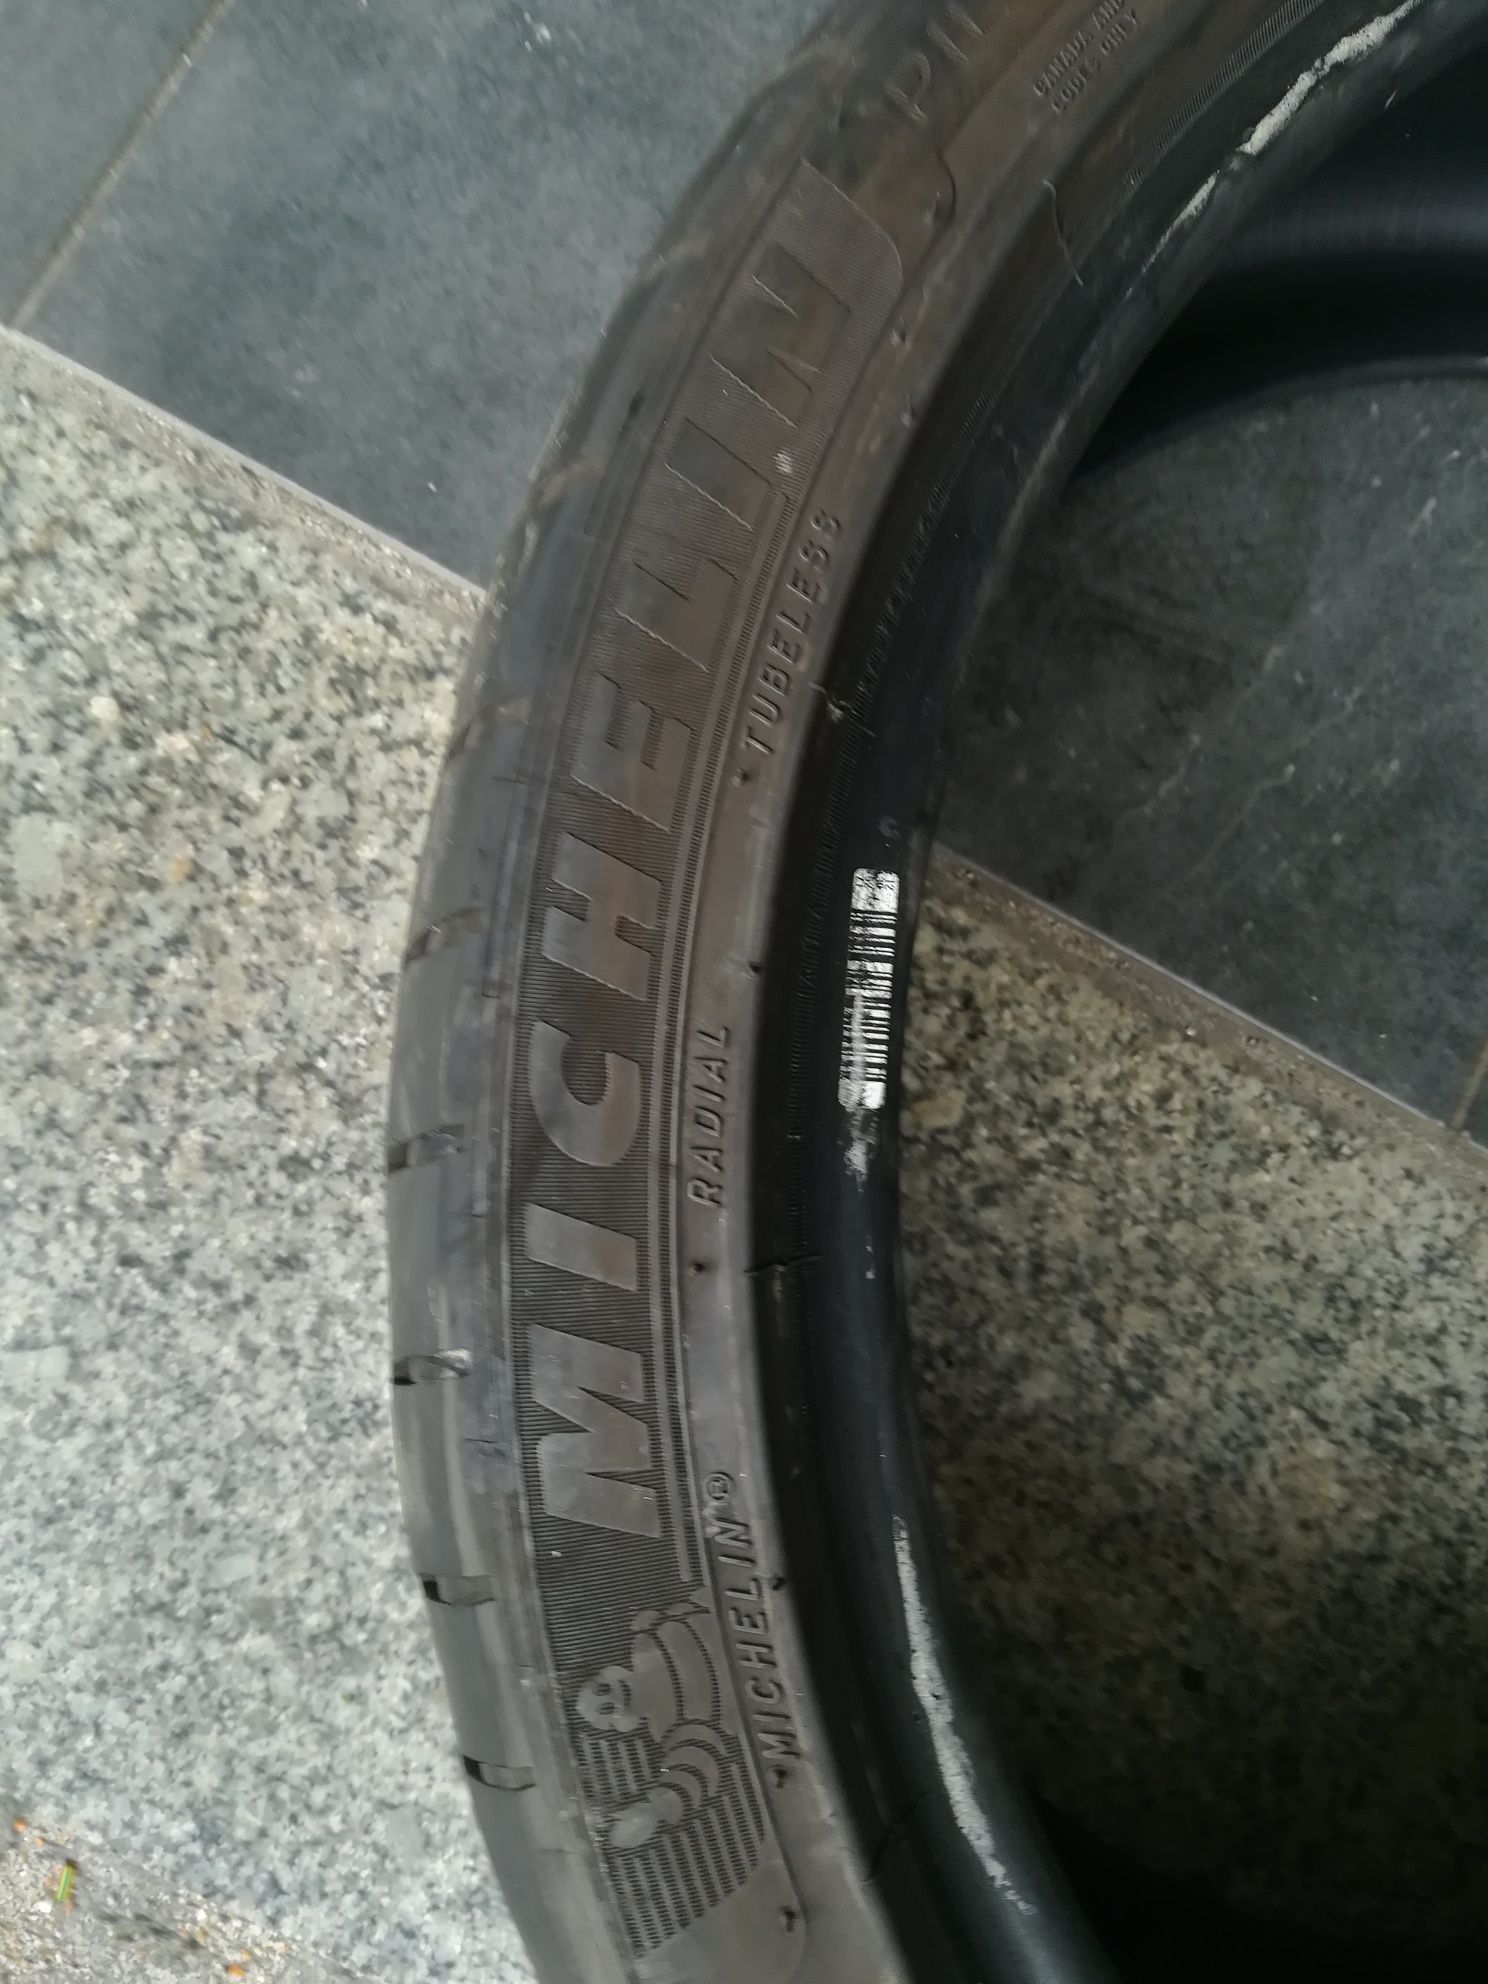 2 pneus 255 35 r19 Michelin